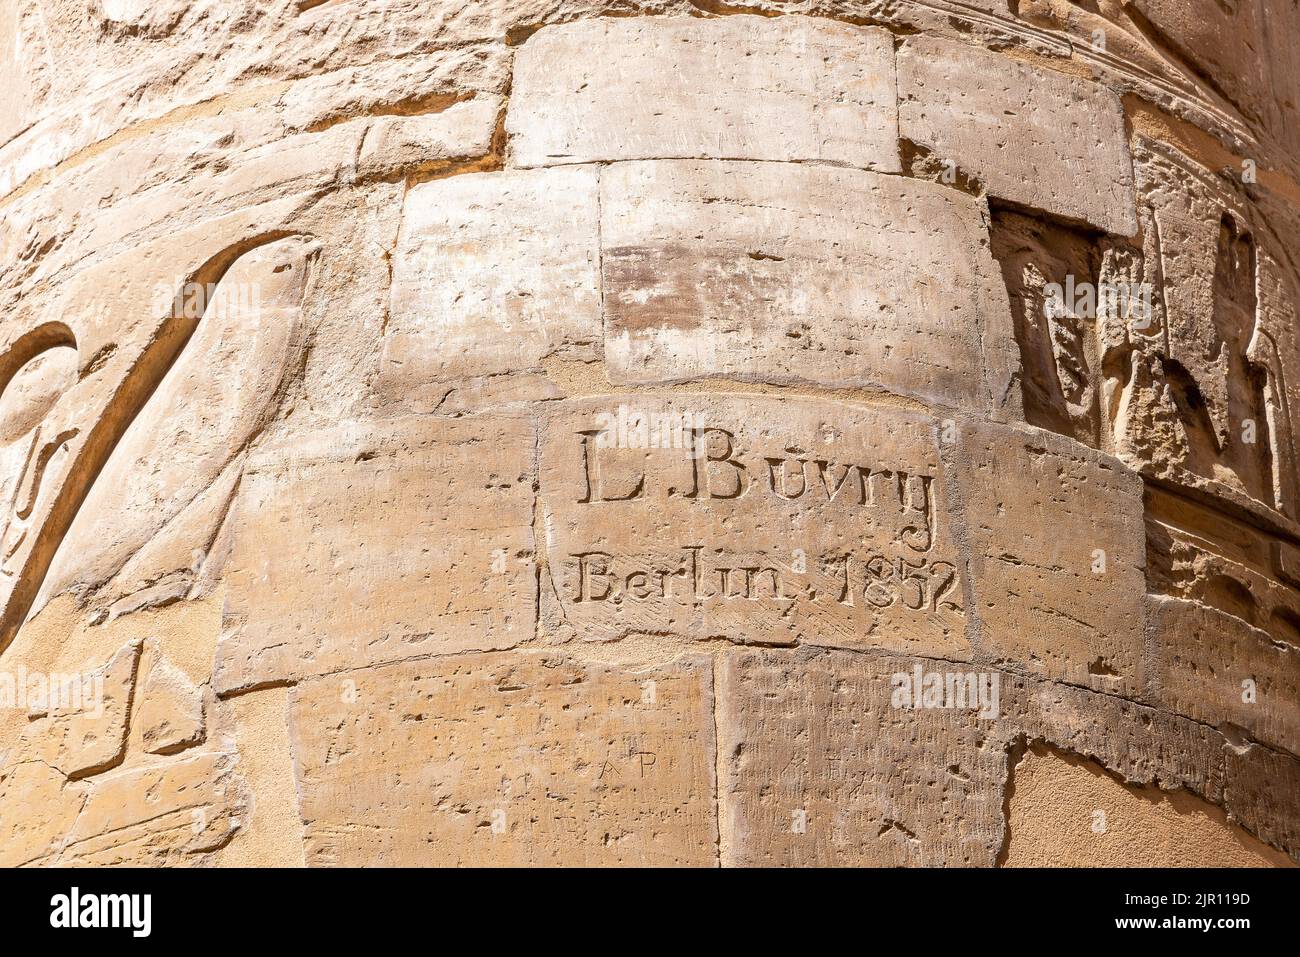 Luxor, Egipto; 18 de agosto de 2022 - Graffiti victoriano tallado en una columna en el templo Karnak, Luxor, Egipto. Foto de stock